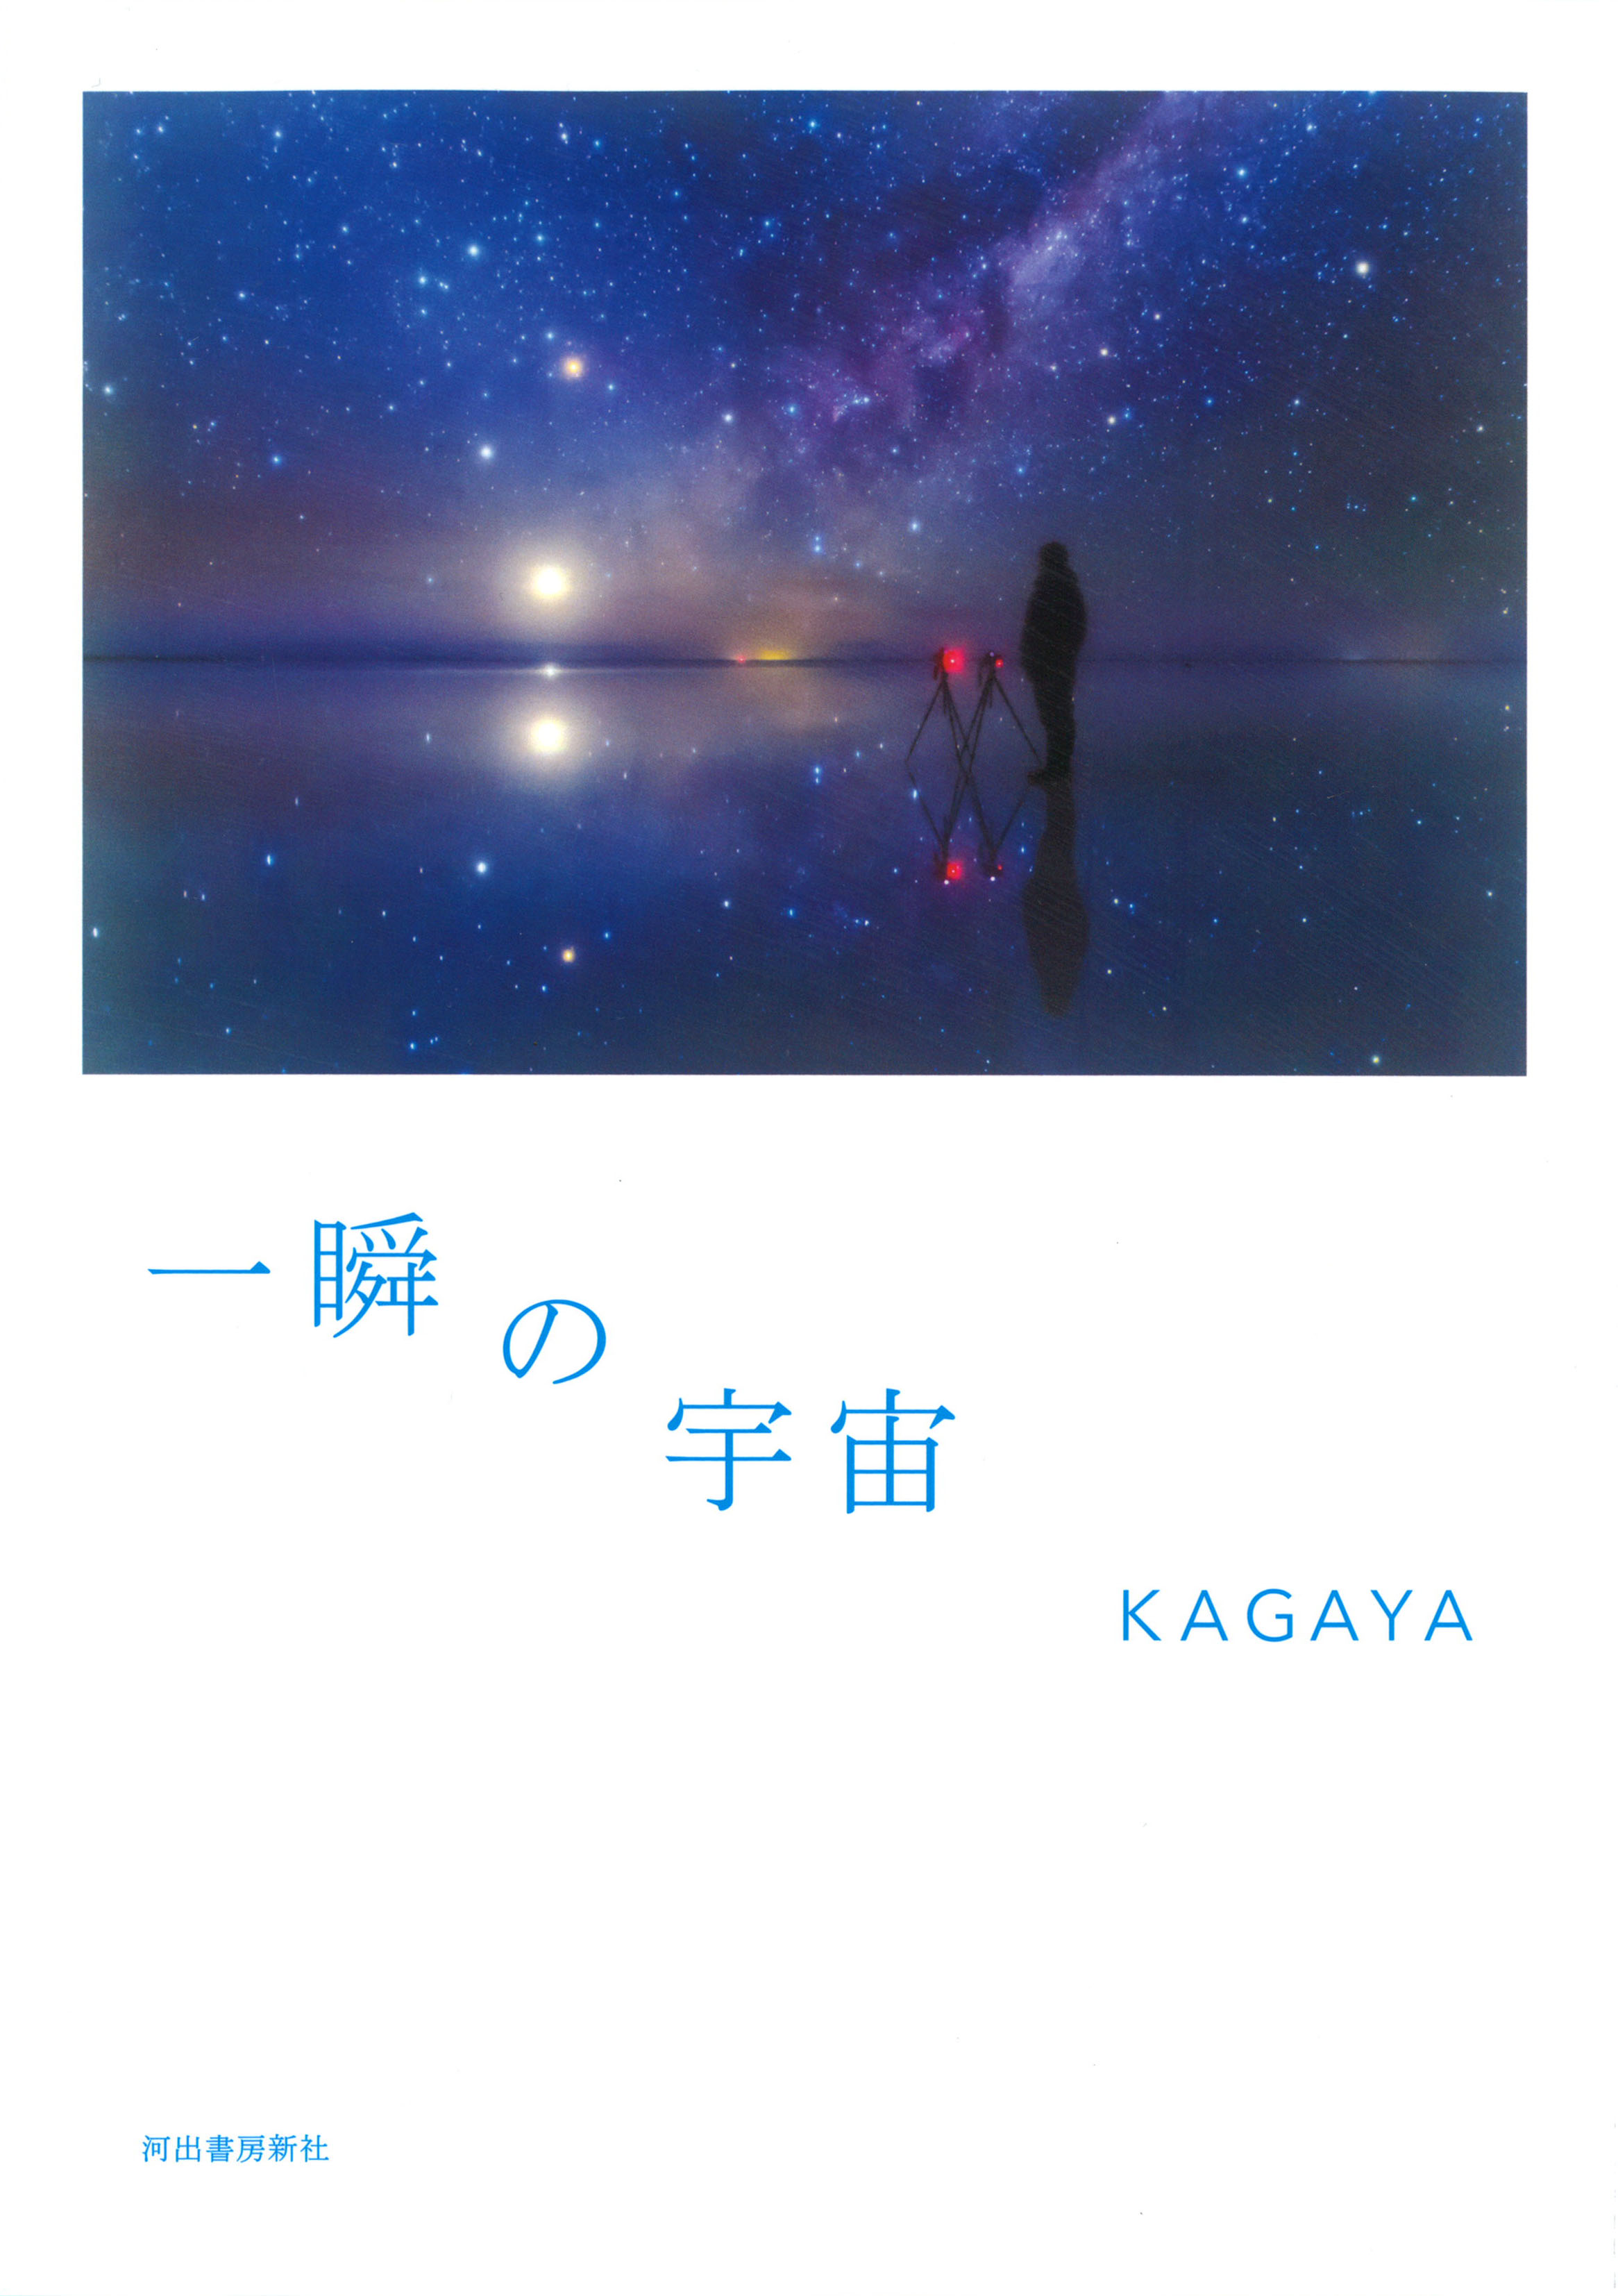 星空写真家kagaya 初のフォト エッセイ 一瞬の宇宙 6月日発売 河出書房新社のプレスリリース